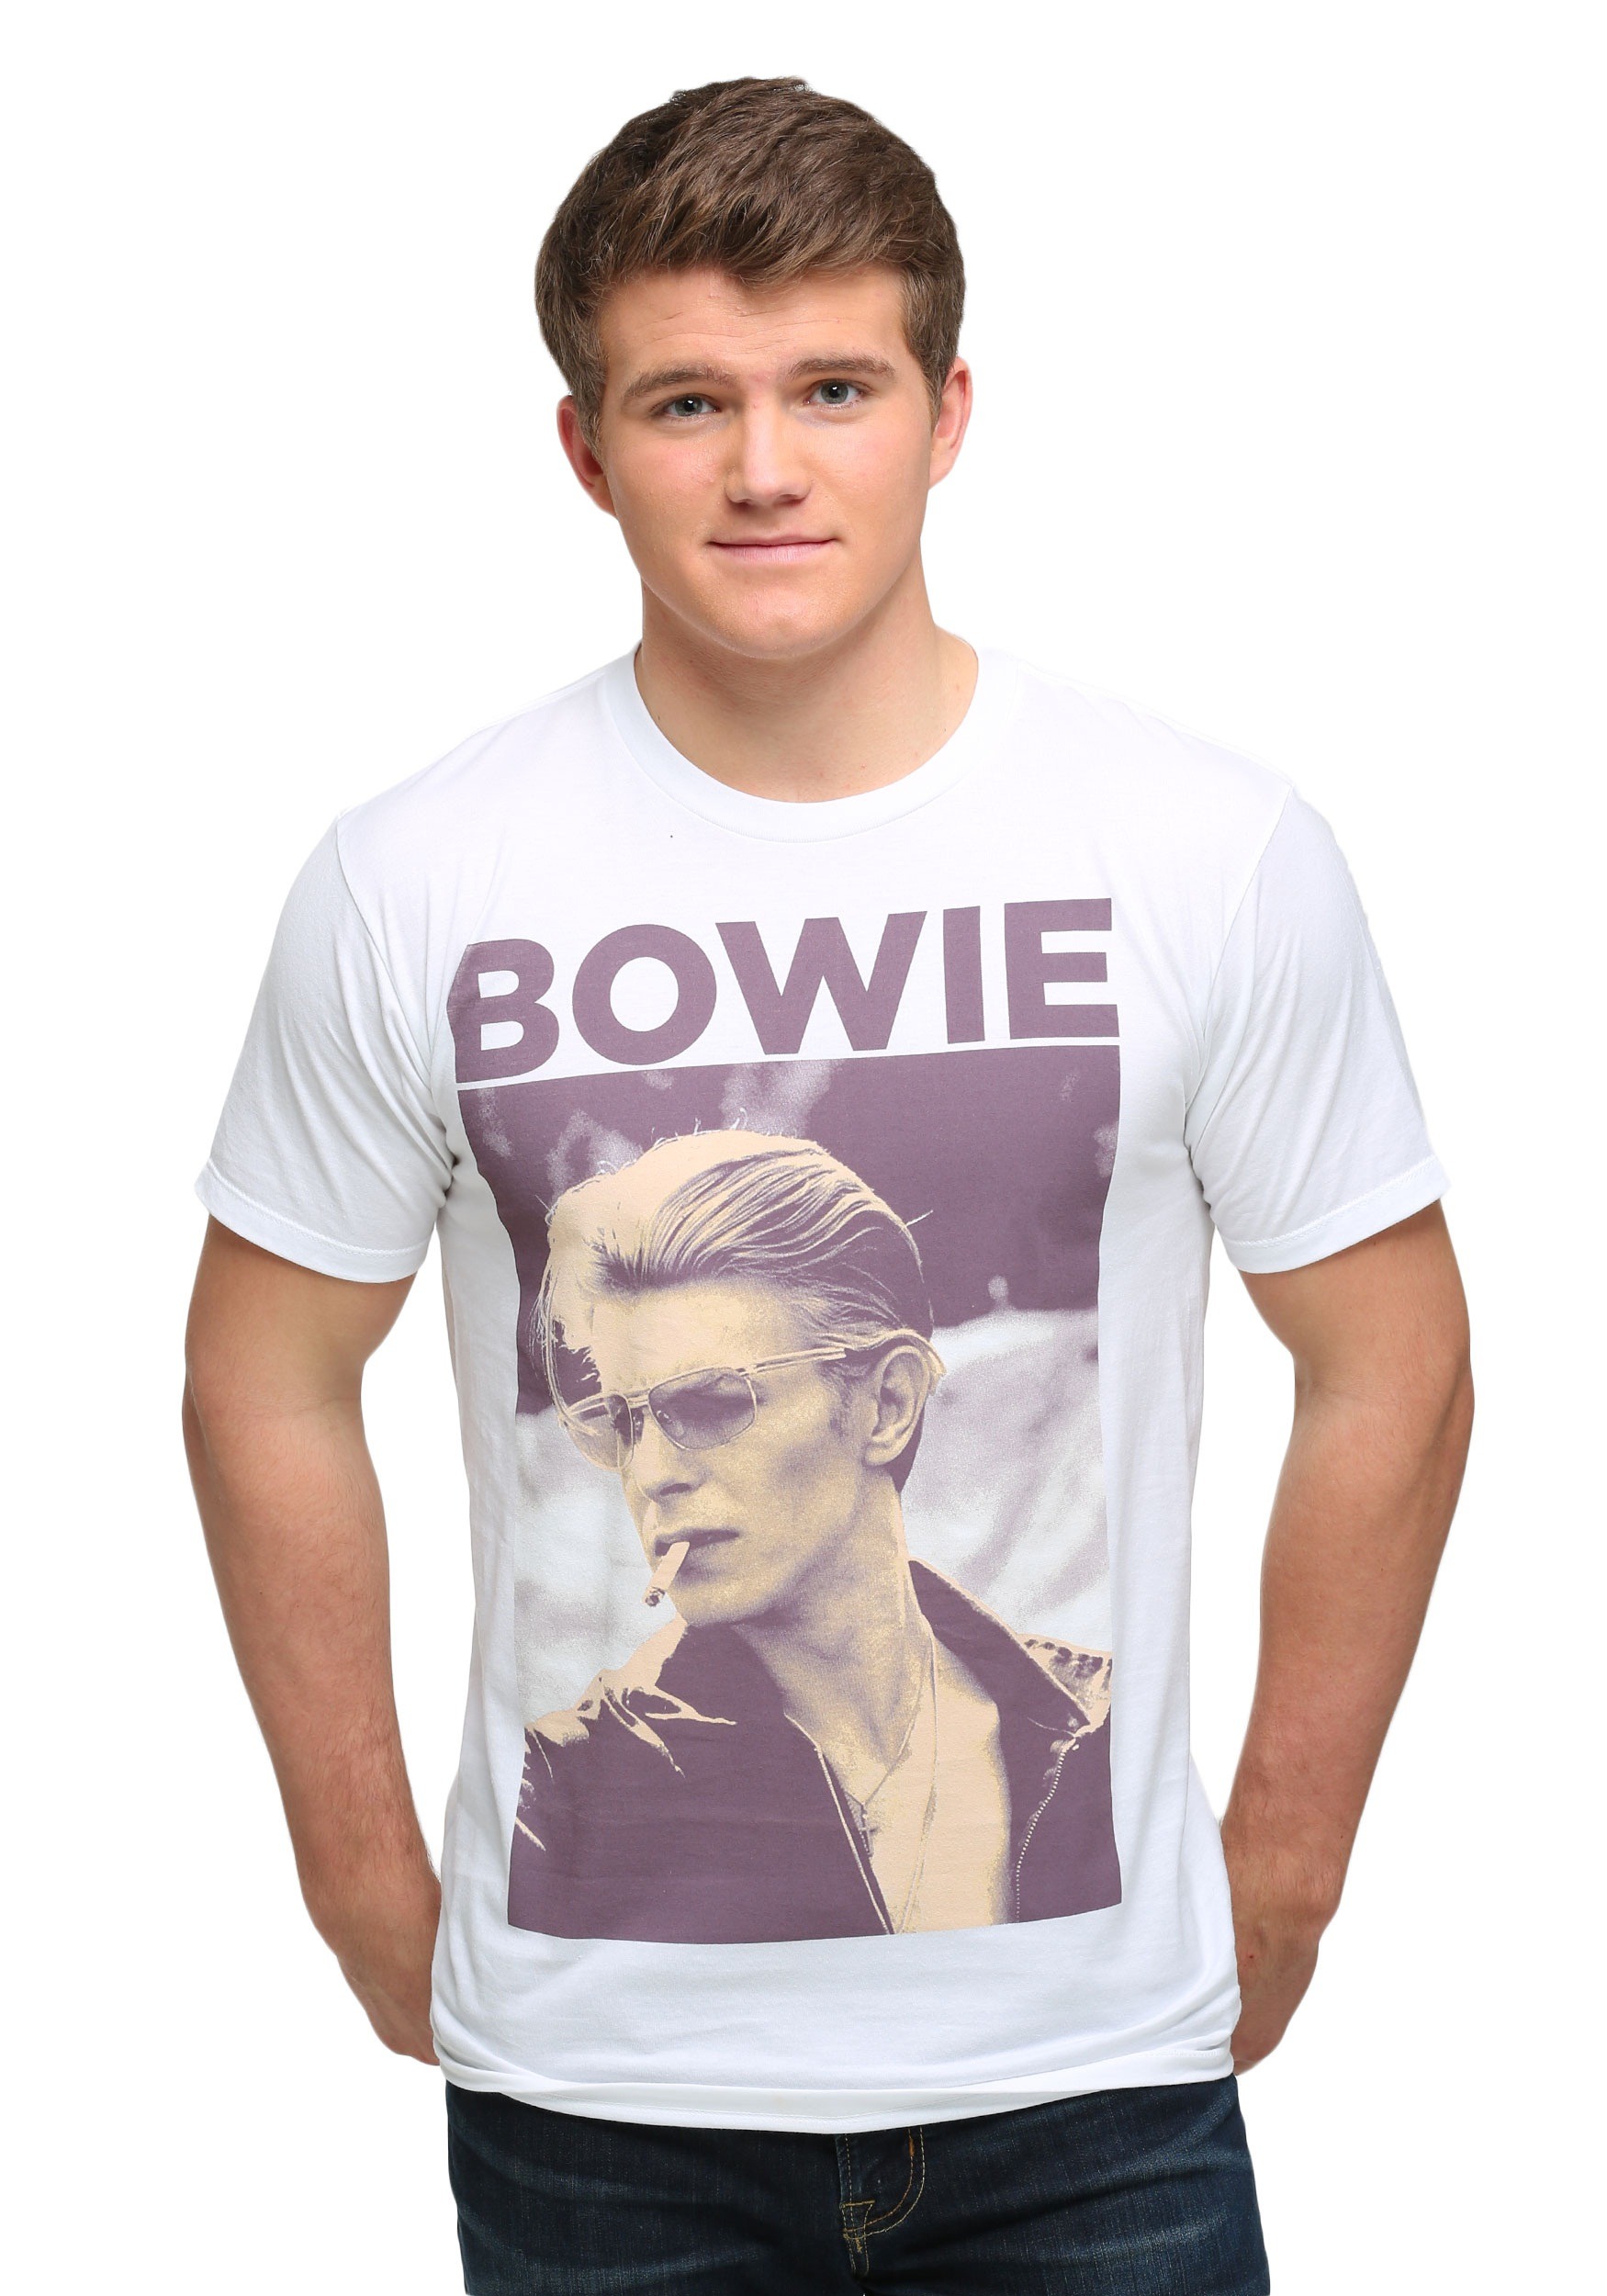 David Bowie Faces T-Shirt Femme Made in Italy Impression sérigraphique Artisanale Manuelle à l’Eau